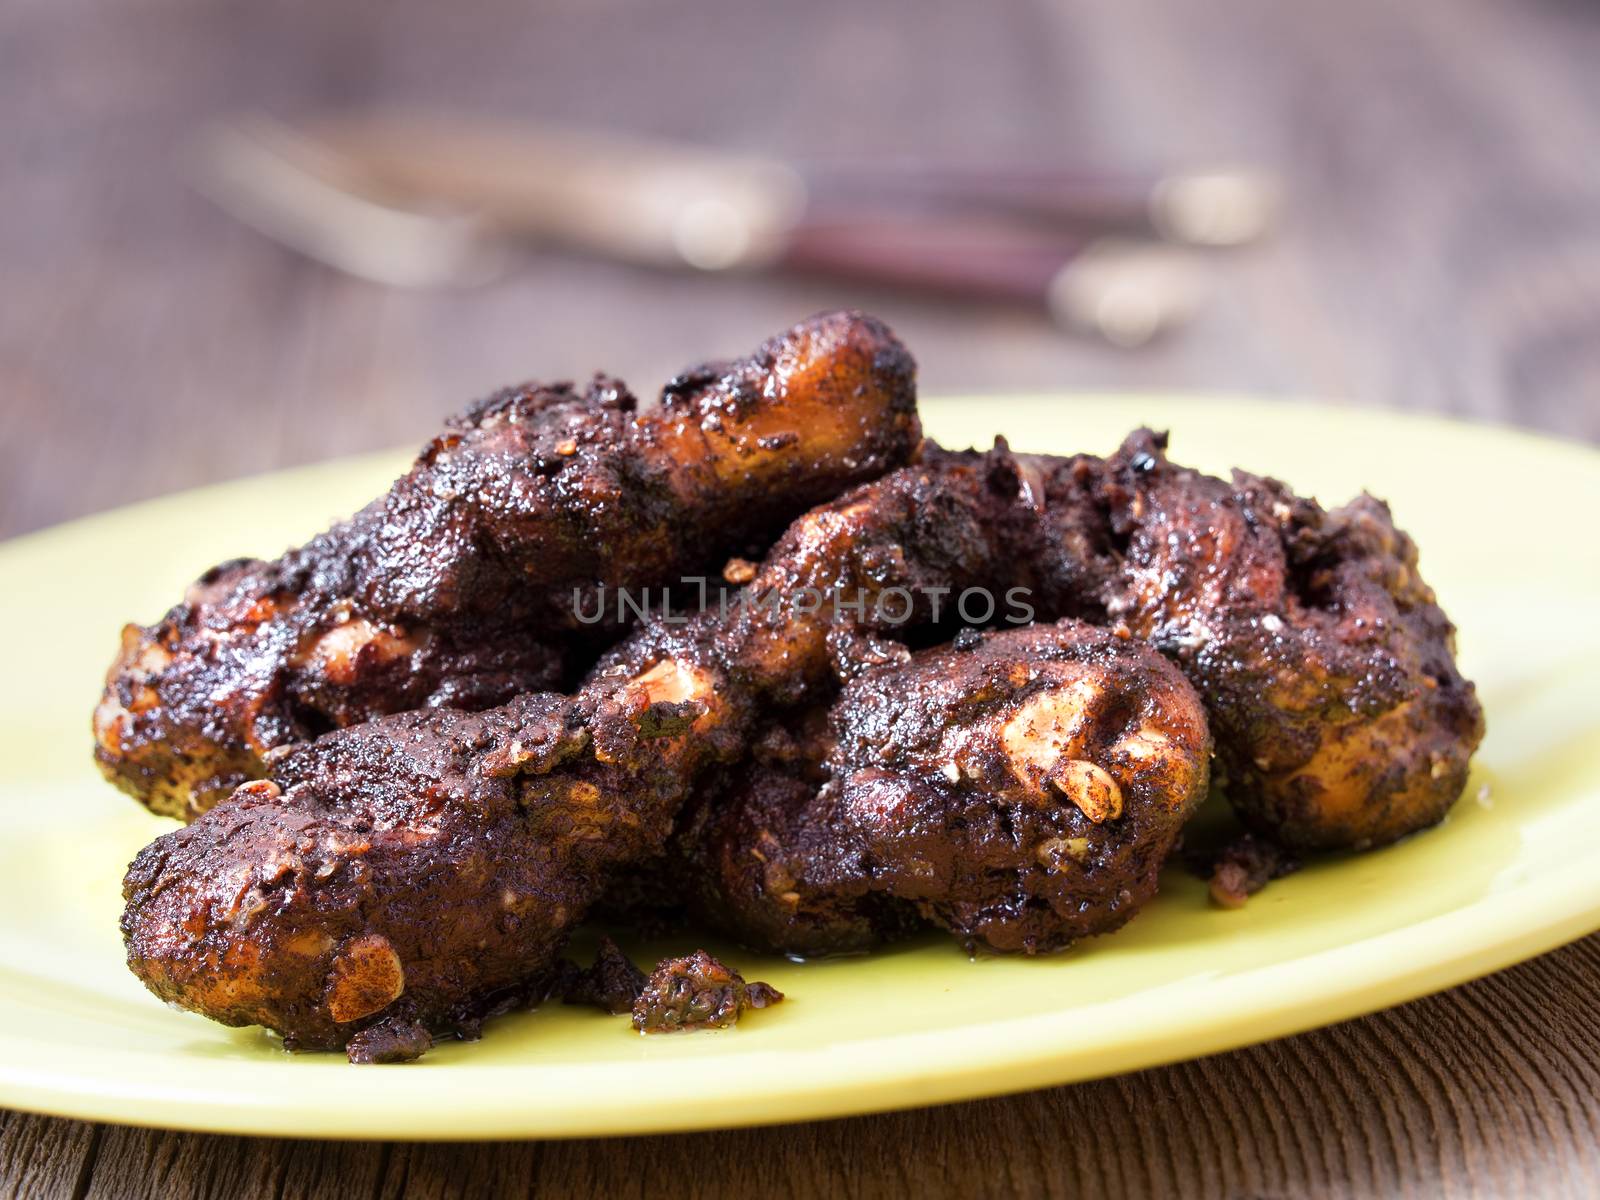 spicy jamaican jerk chicken by zkruger